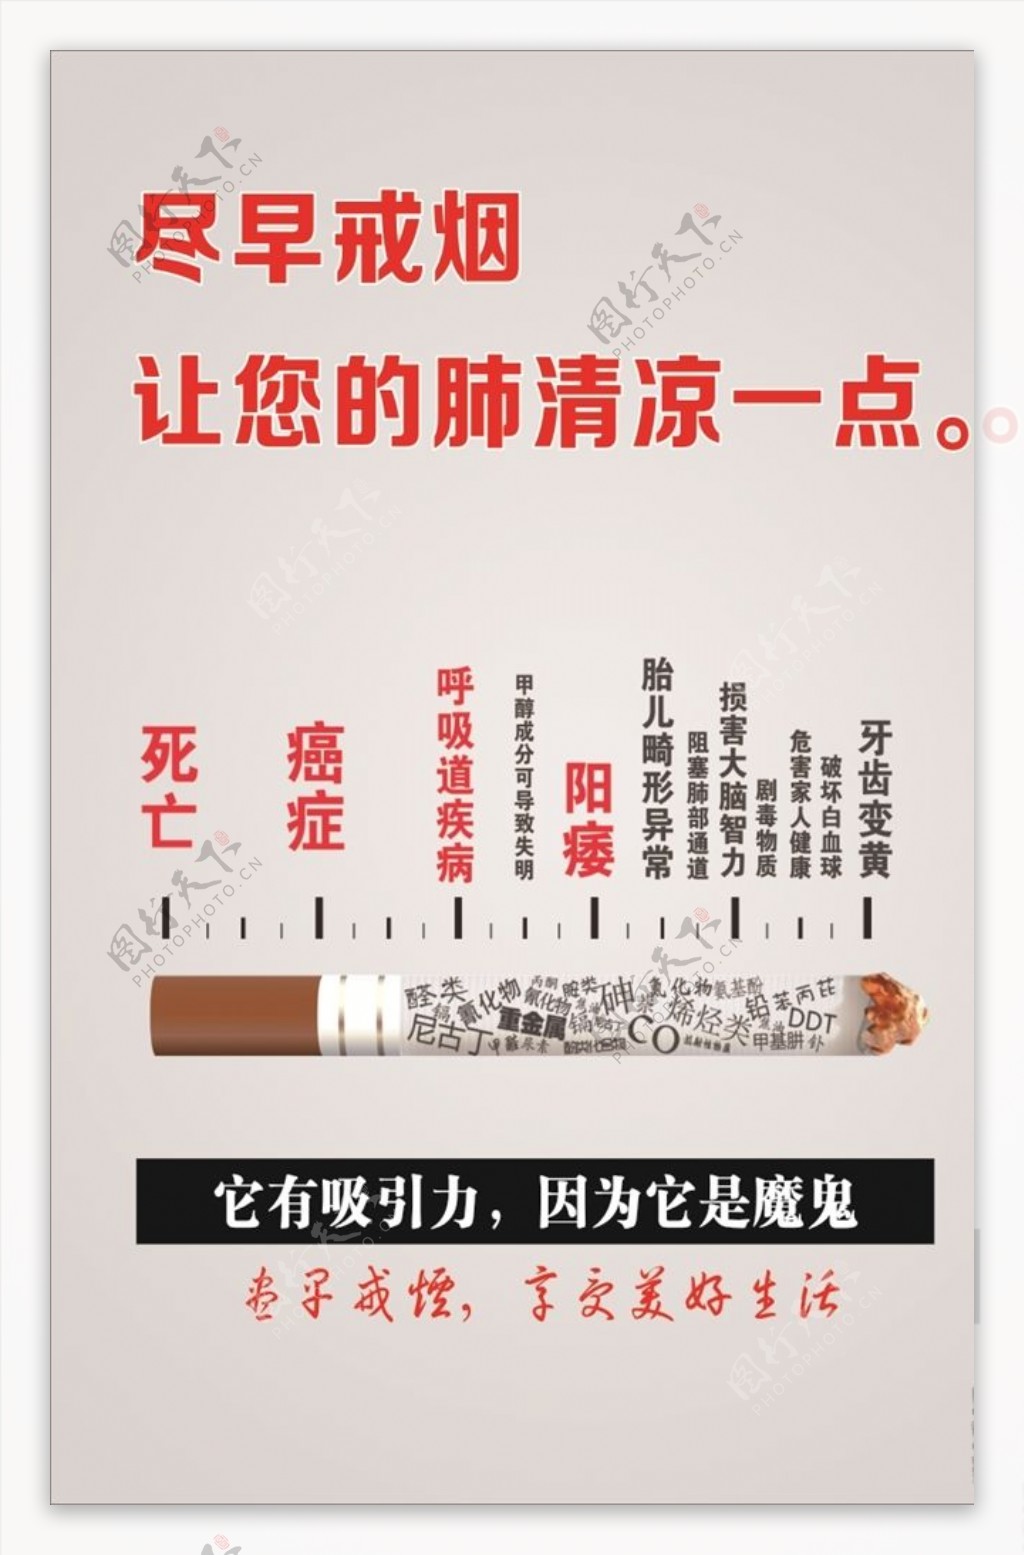 戒烟广告